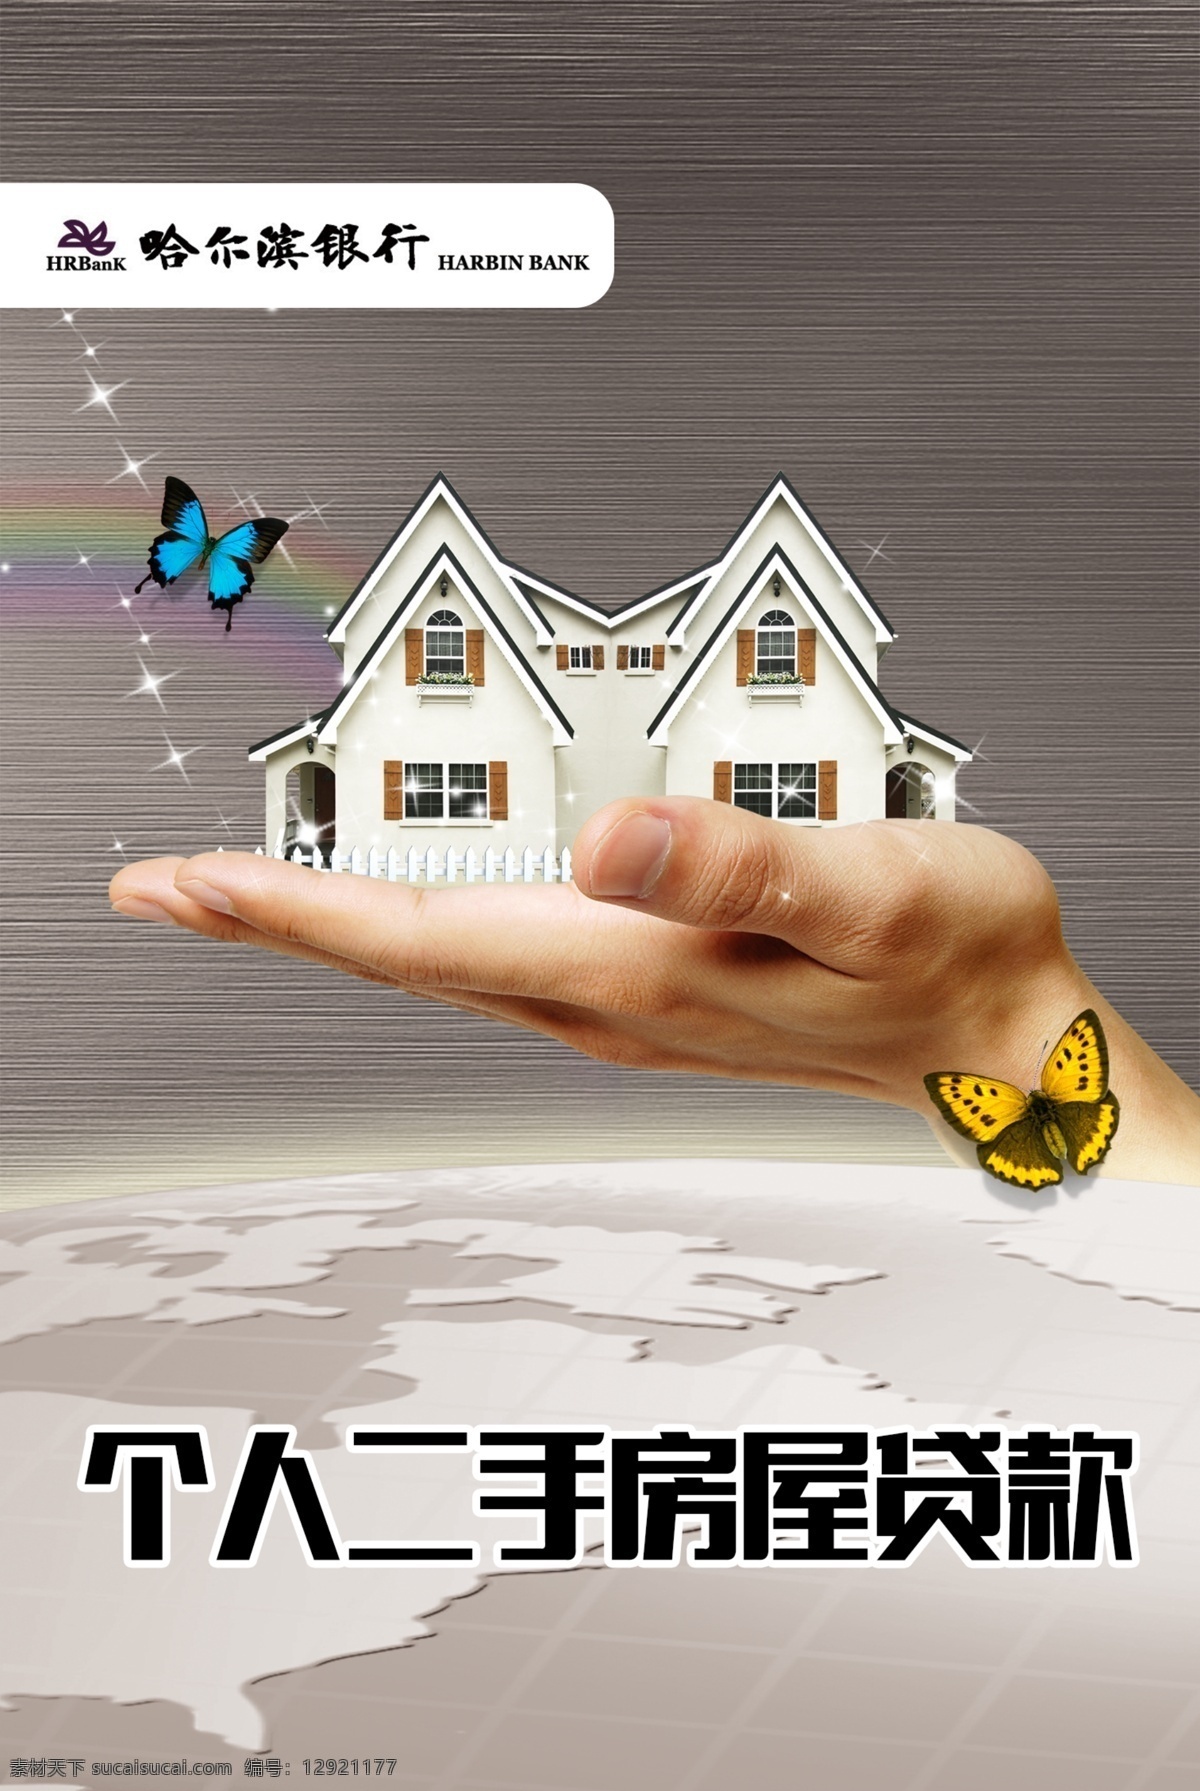 房屋贷款海报 地球 背景 星光 蝴蝶 手 拖起 托起 别墅 房屋